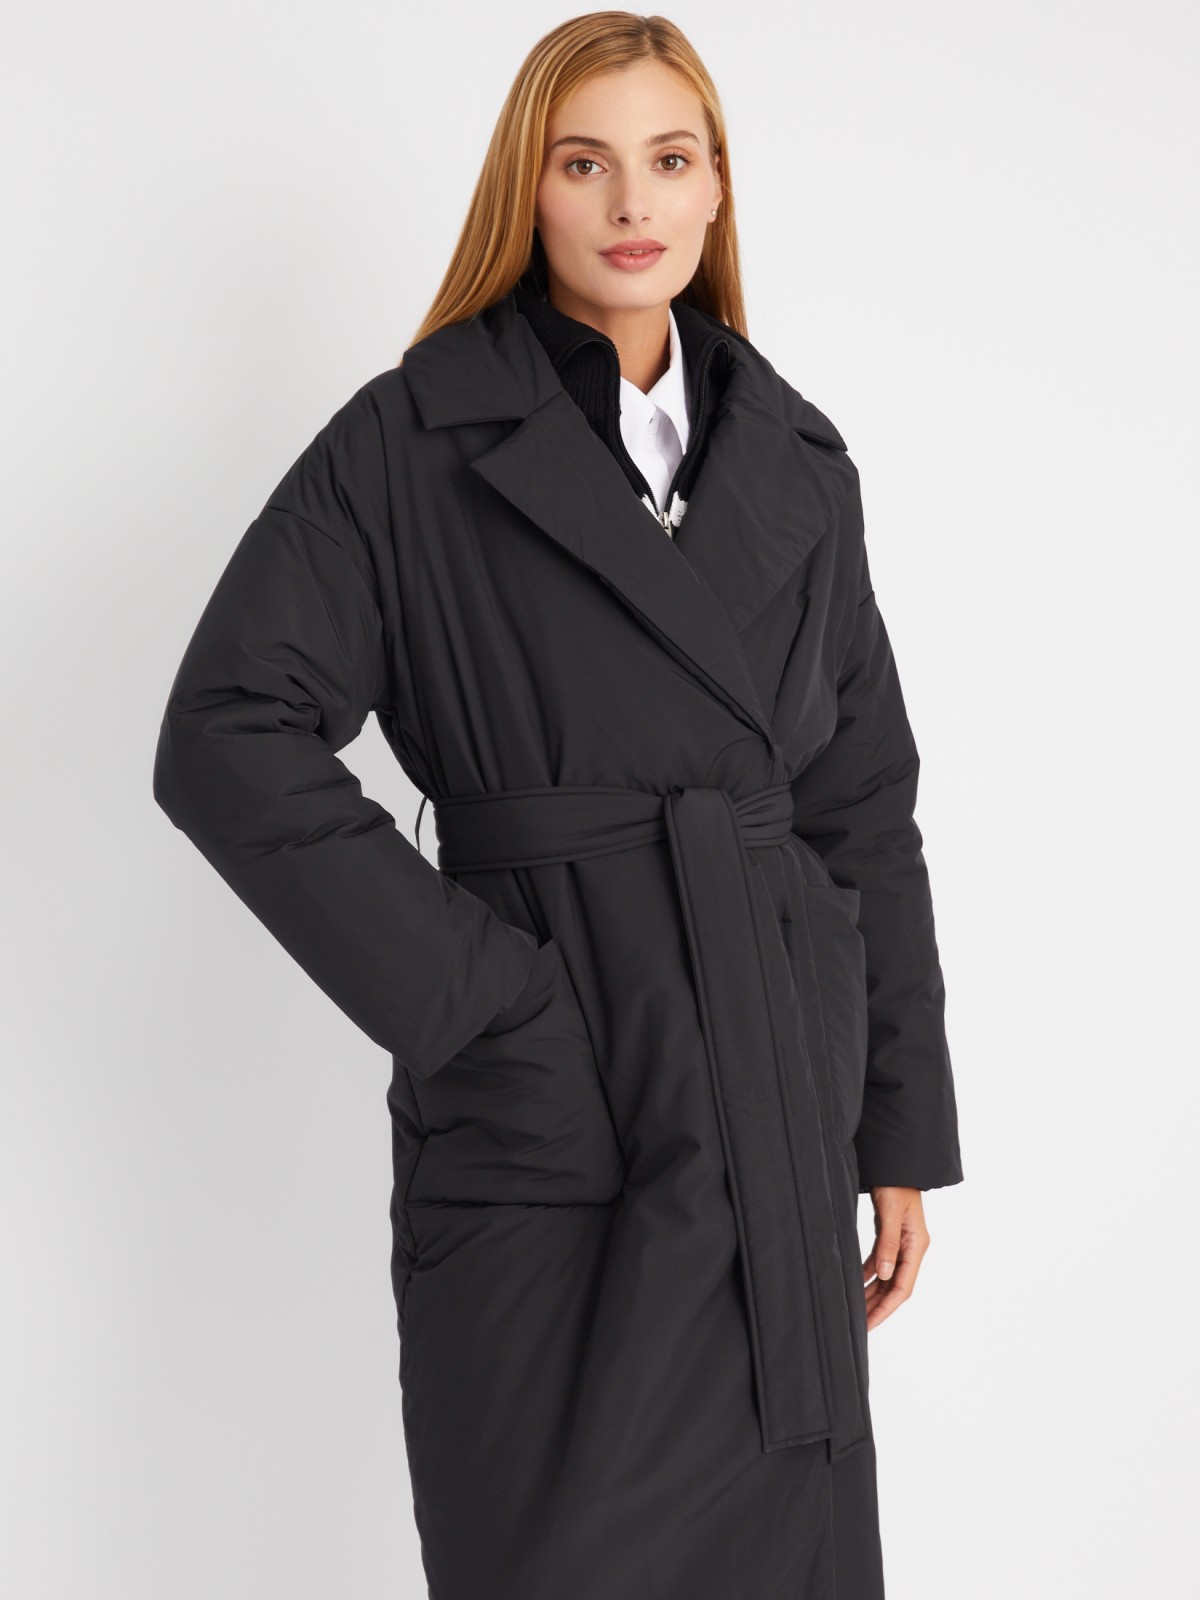 Тёплое пальто оверсайз силуэта на синтепоне с отложным воротником и поясом zolla 023335297244, цвет черный, размер L - фото 4